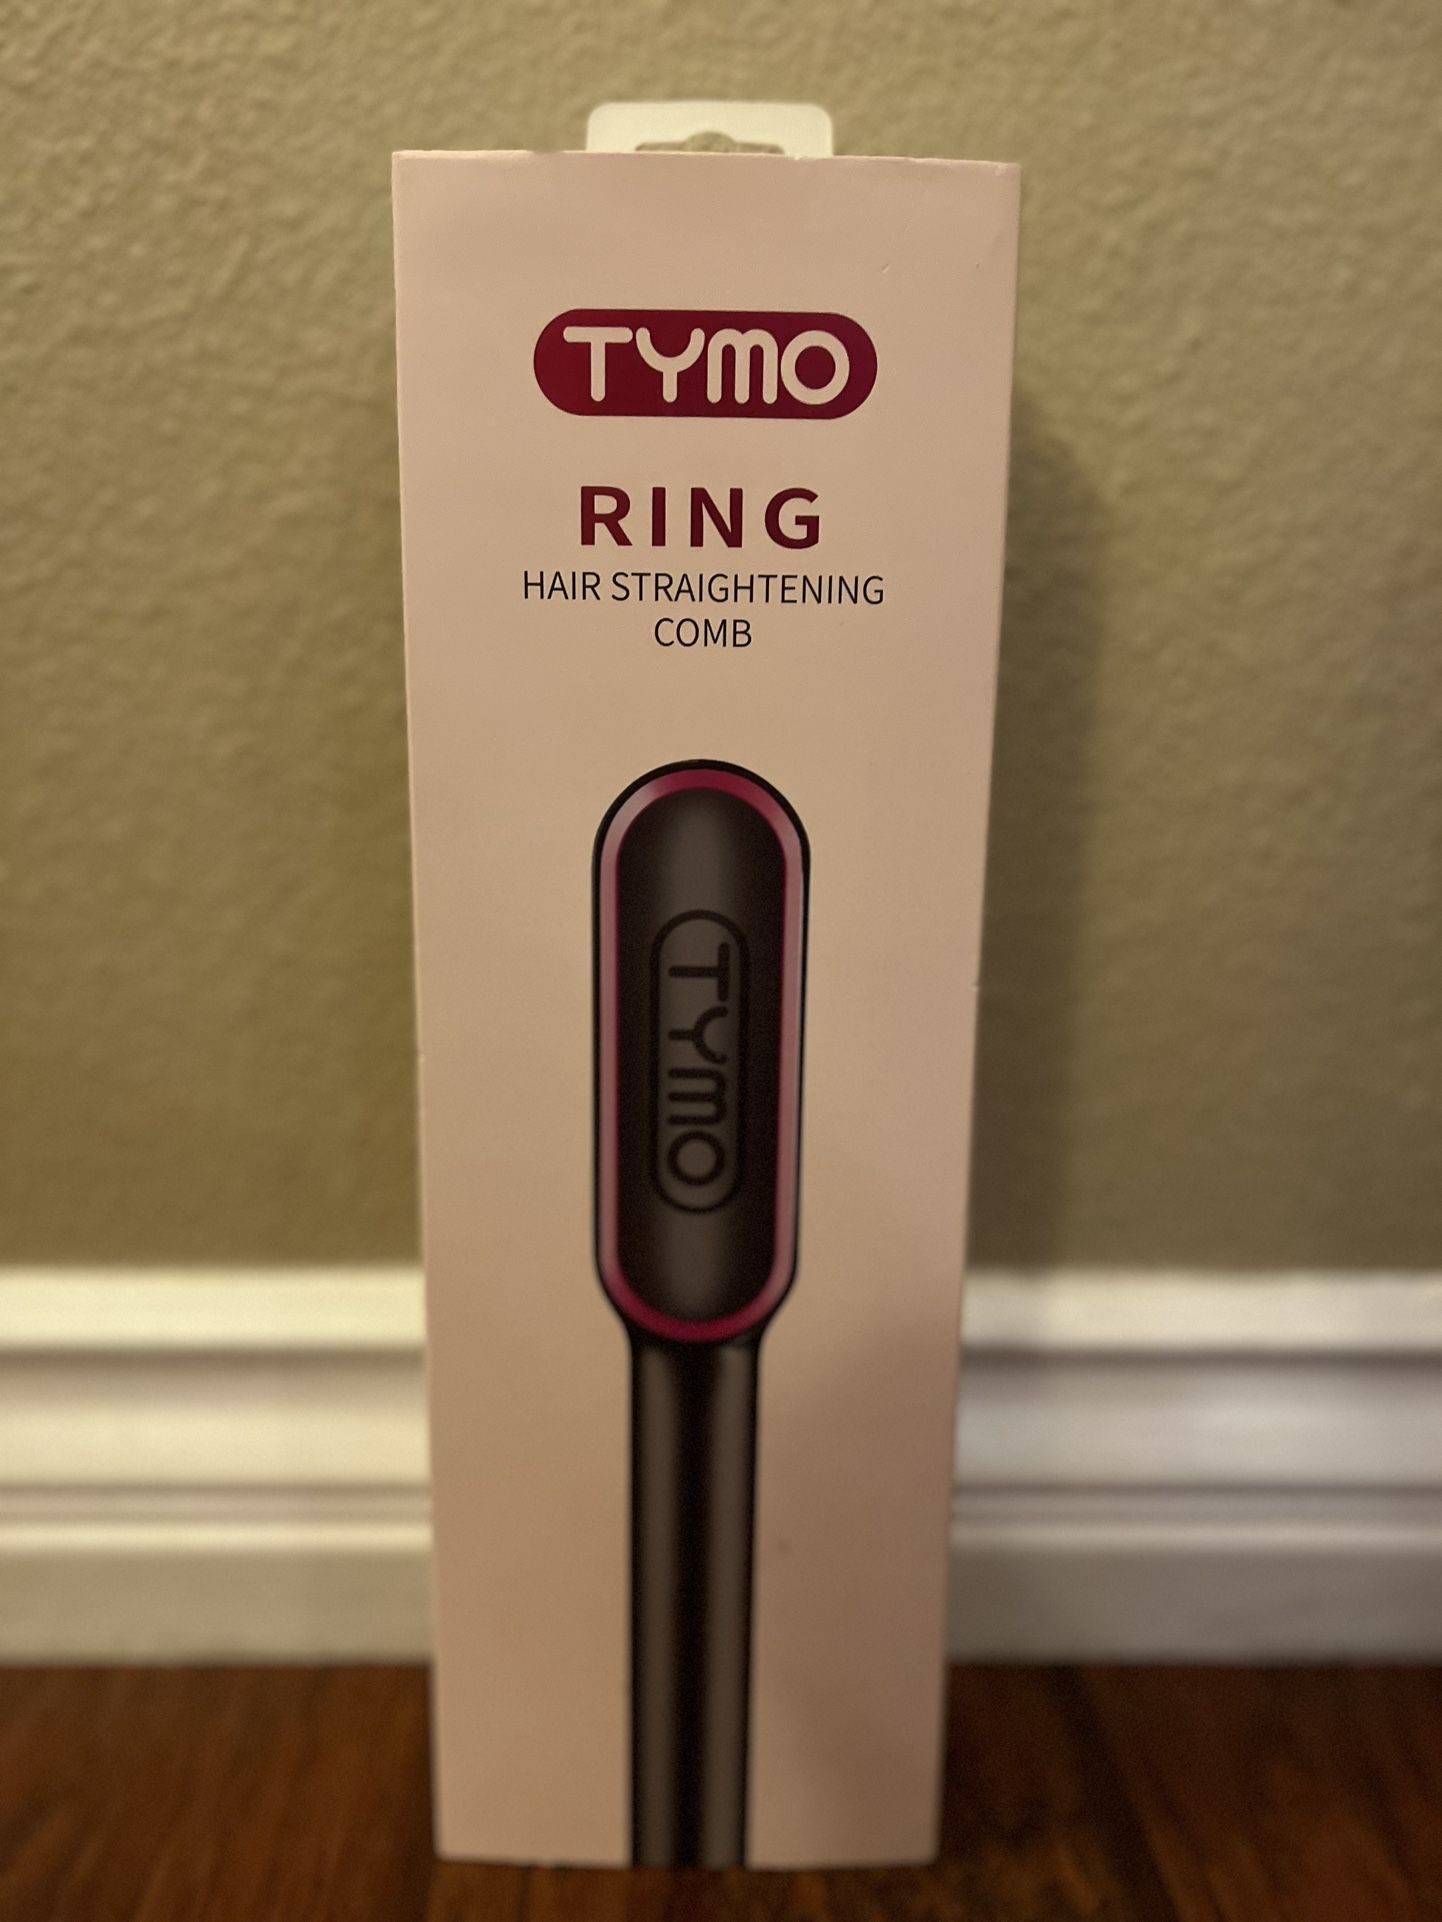 Tymo Ring Hair Straightening Comb/ Straightener 